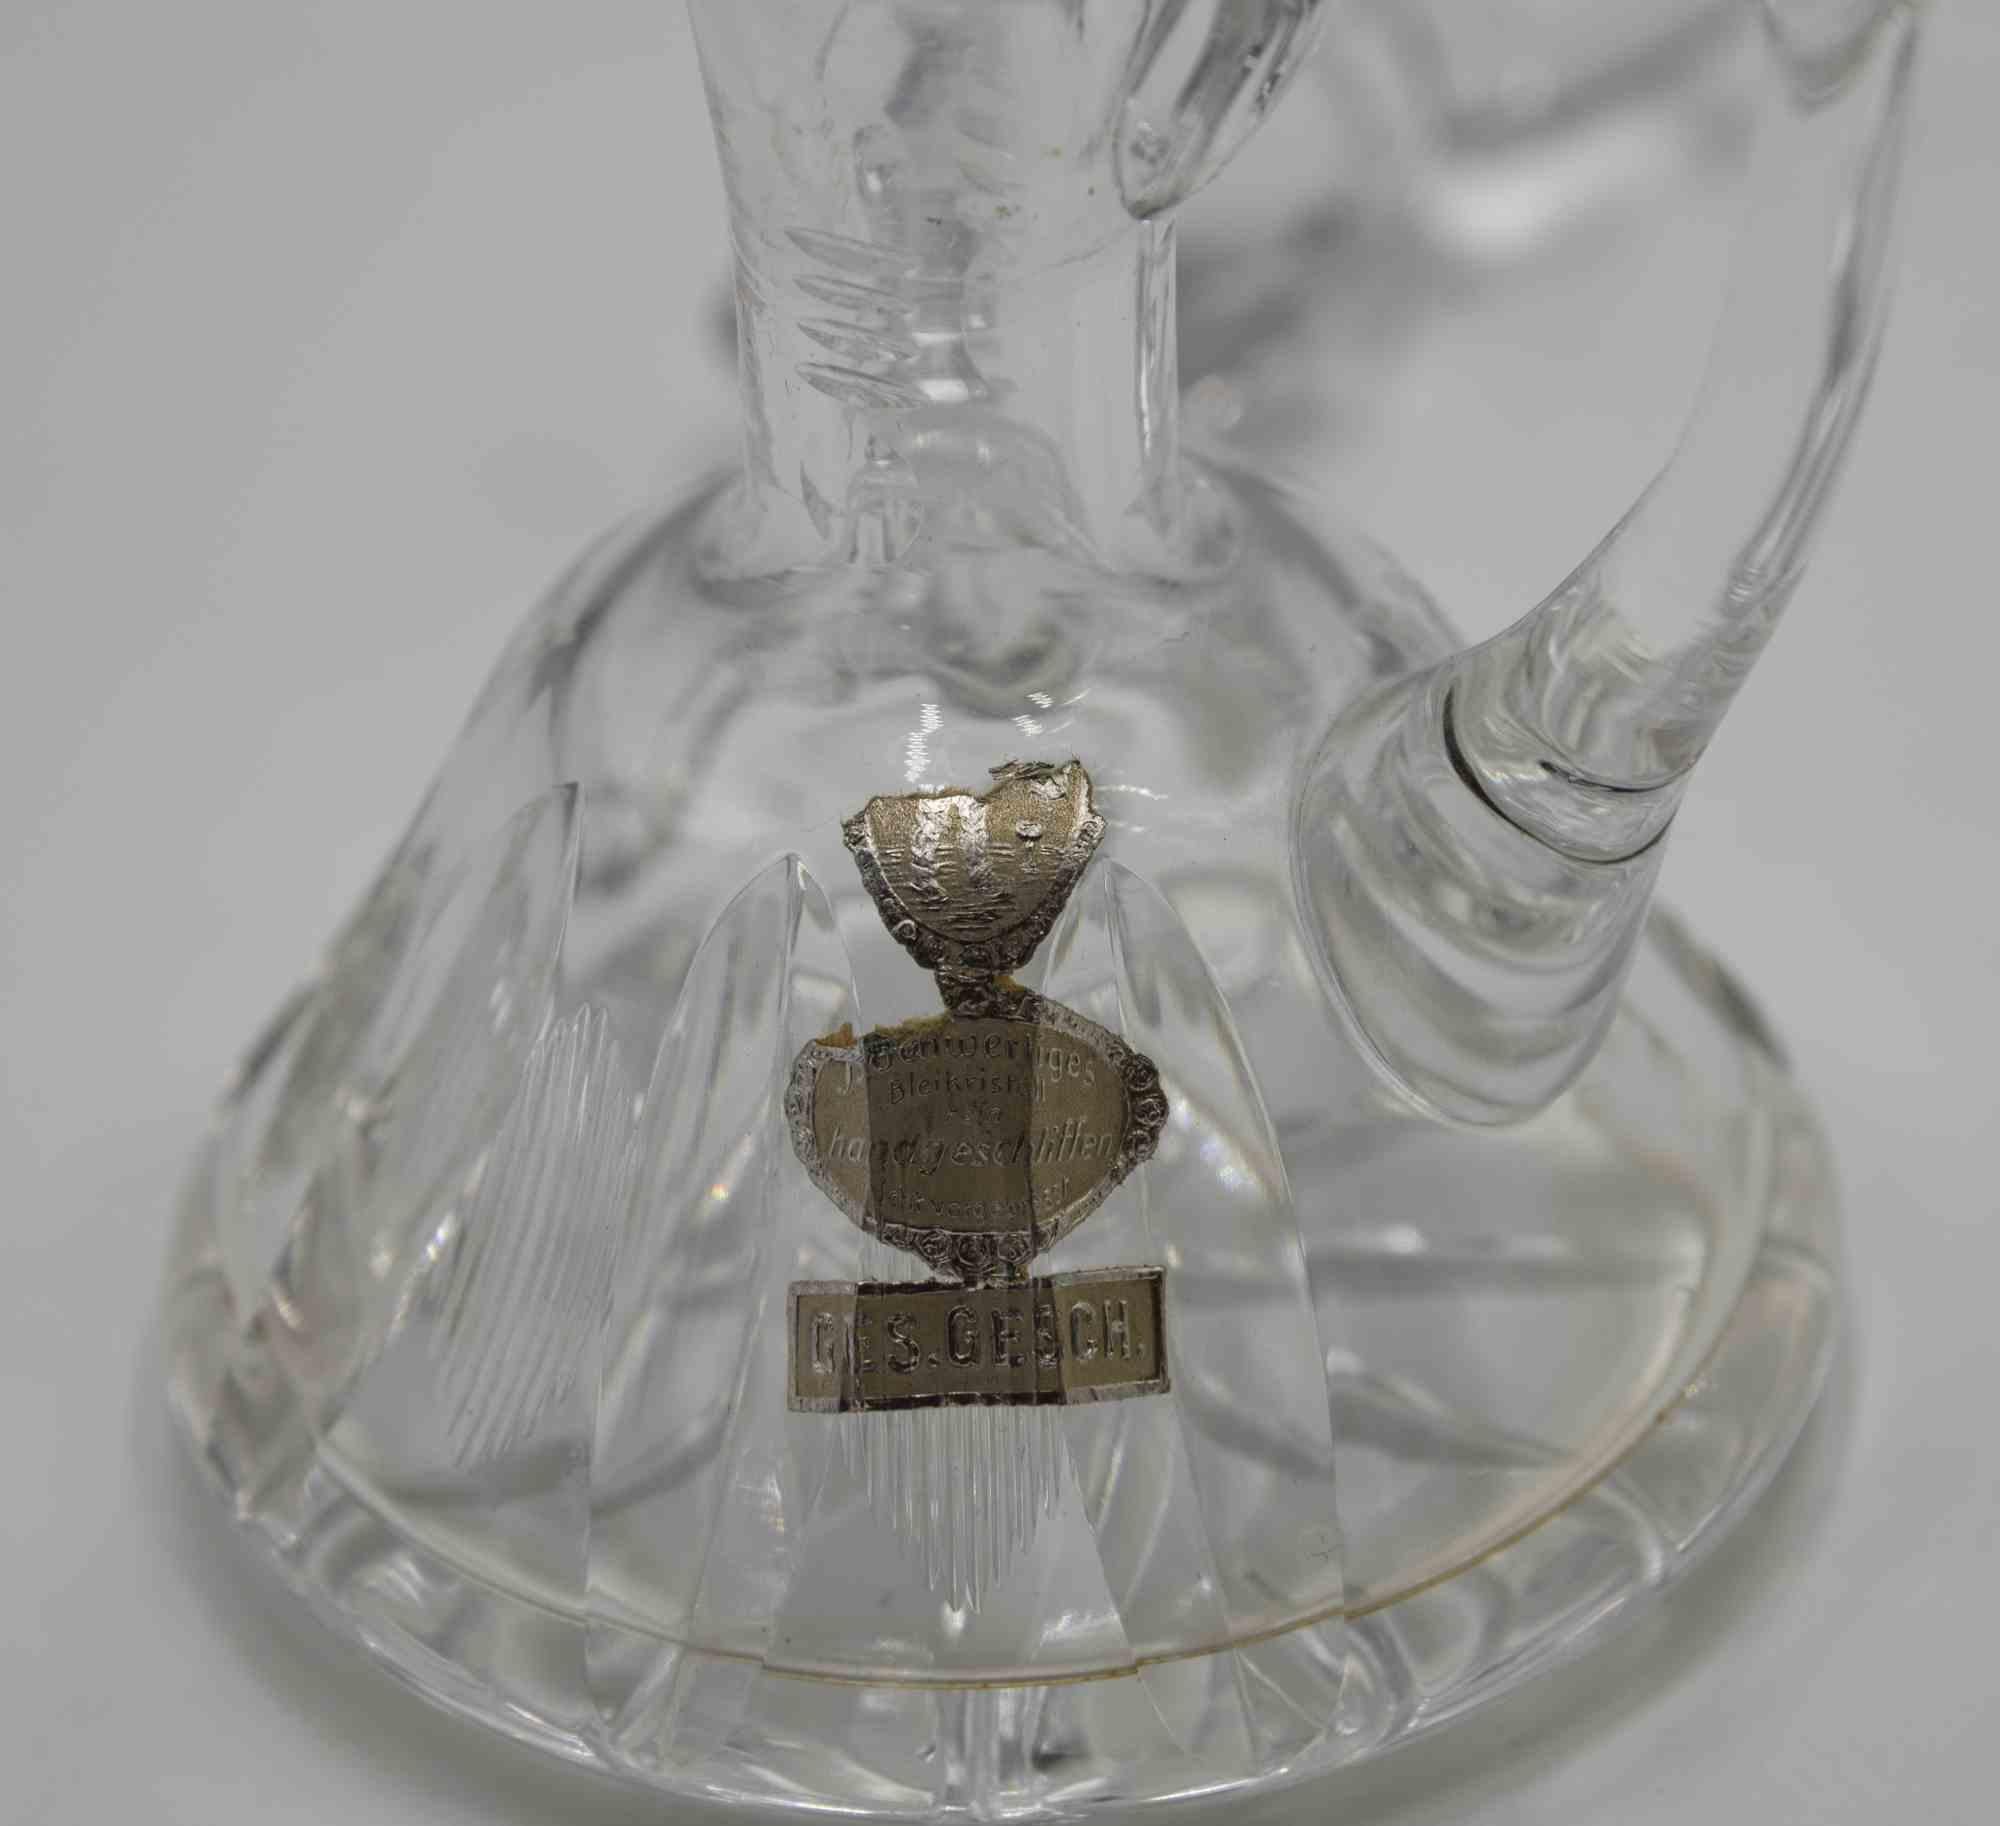 Der kleine Ölkrug aus Glas ist ein dekoratives Objekt aus den 1970er Jahren.

Elegantes kleines Ölkännchen aus Kunstglas, perfekt für Ihren Tisch.

Hergestellt in Deutschland, wie auf dem Label angegeben.